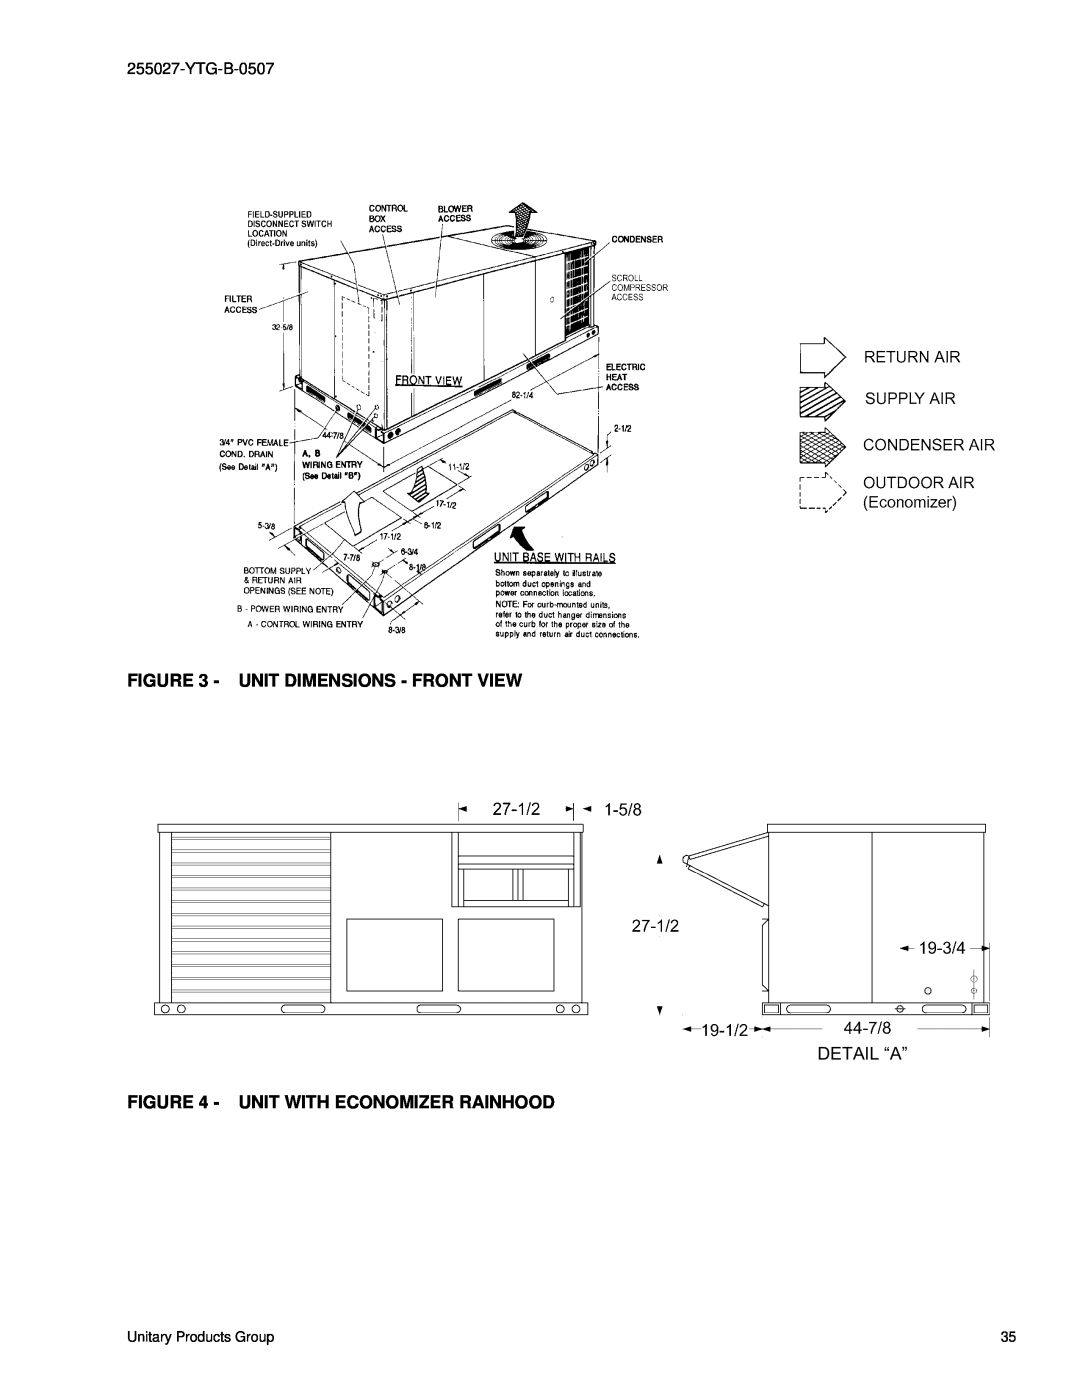 York BP 036 warranty Unit Dimensions - Front View, Detail “A”, Unit With Economizer Rainhood 